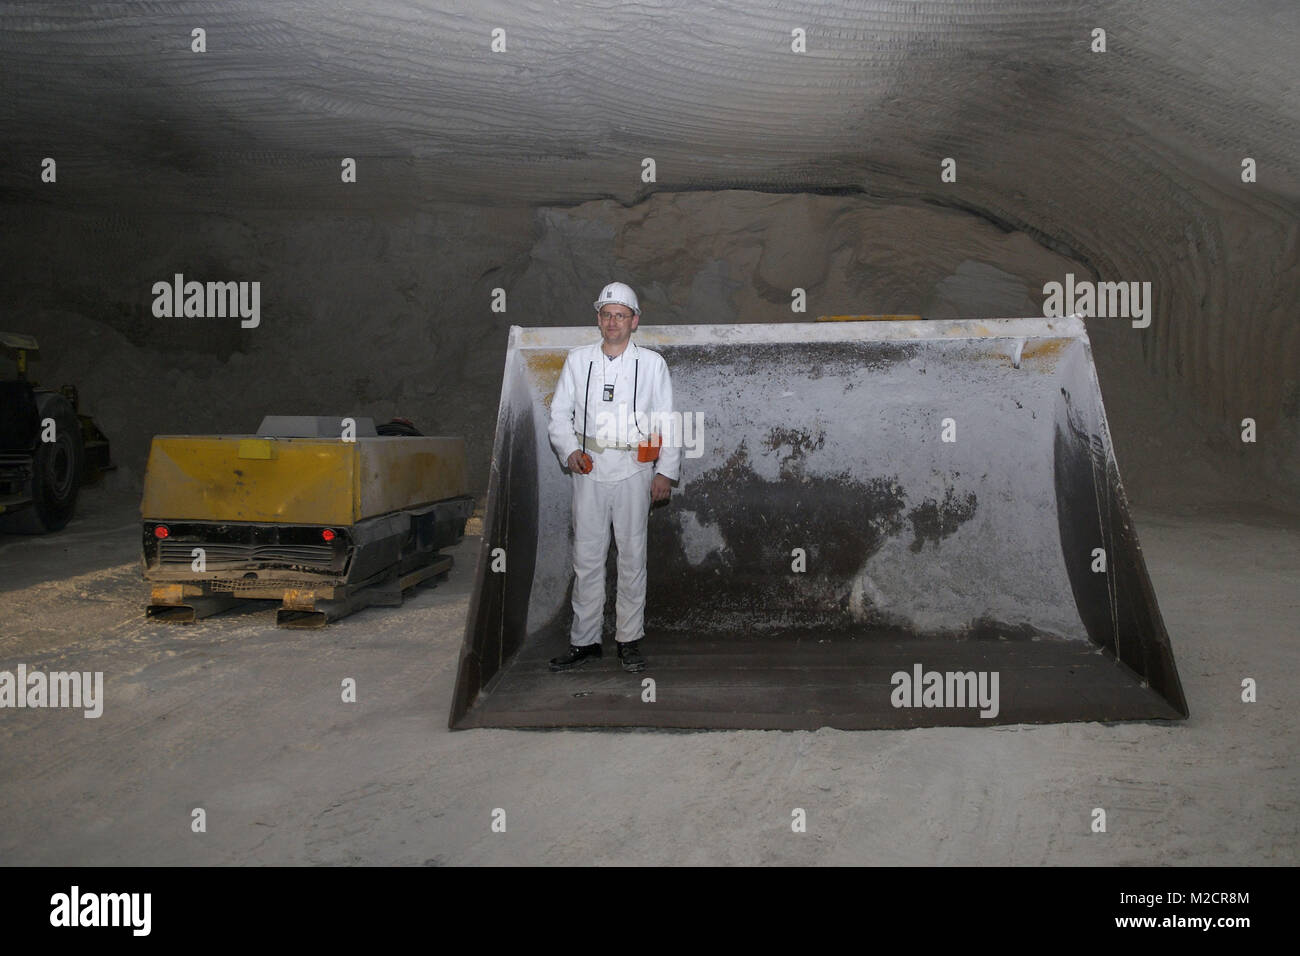 Besichtigung des Atommuellendlagers asse 2 in Remlingen am 22.07.2009 - Fahrzeuge und Baumaschinen unter Tage / Foto: Clemens Niehaus Foto Stock